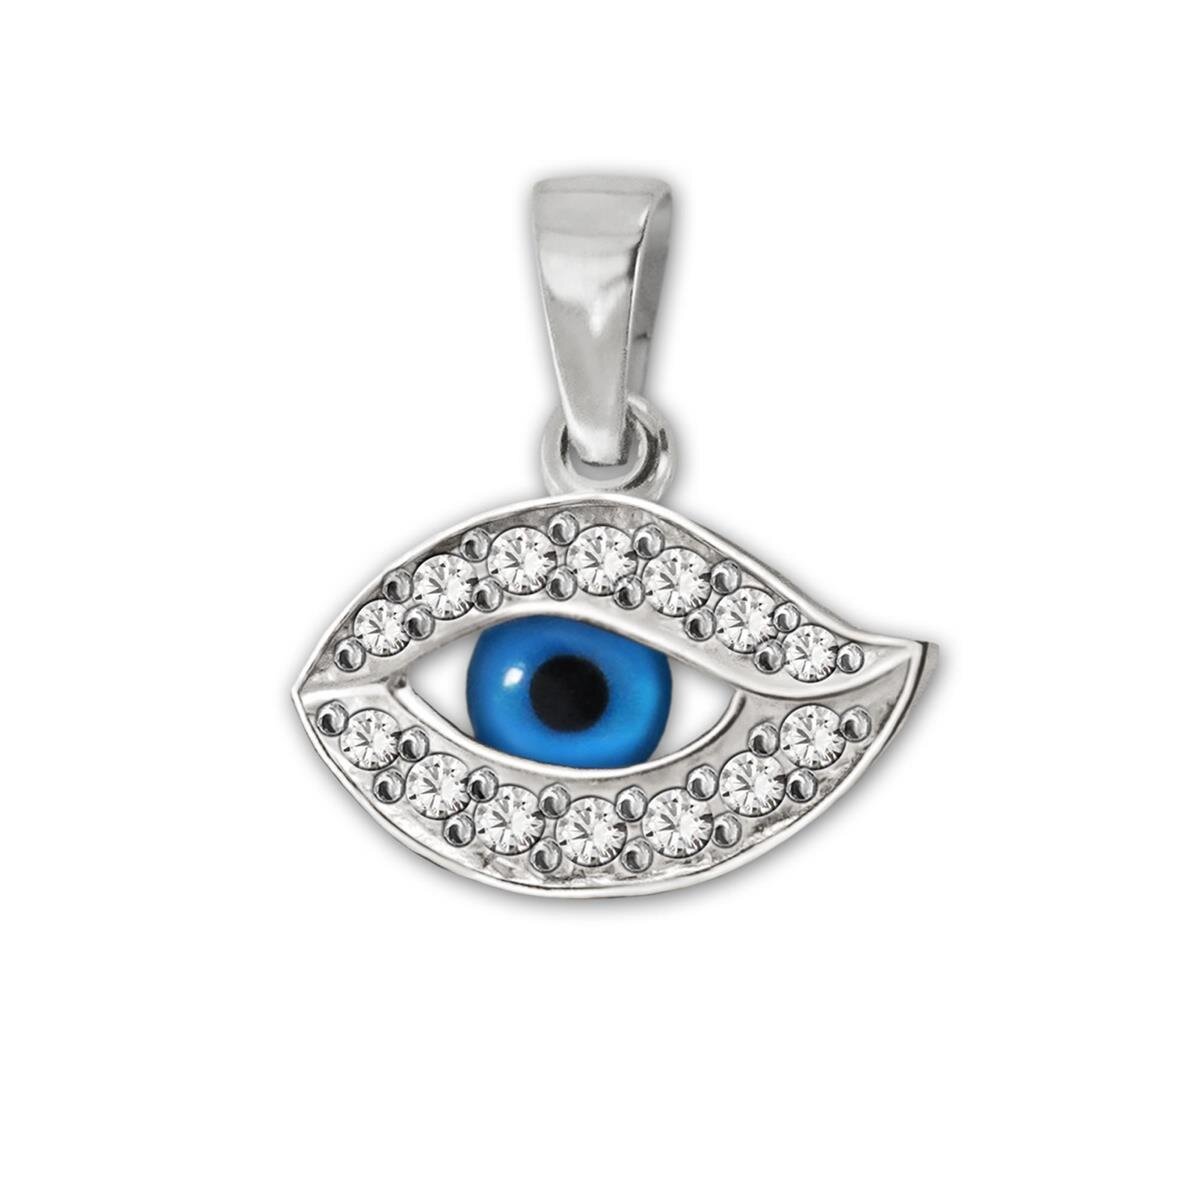 Anh&auml;nger Mini Nazar Auge 8 x14 mm Kristall blau und viele Zirkonias wei&szlig; Echt Silber 925